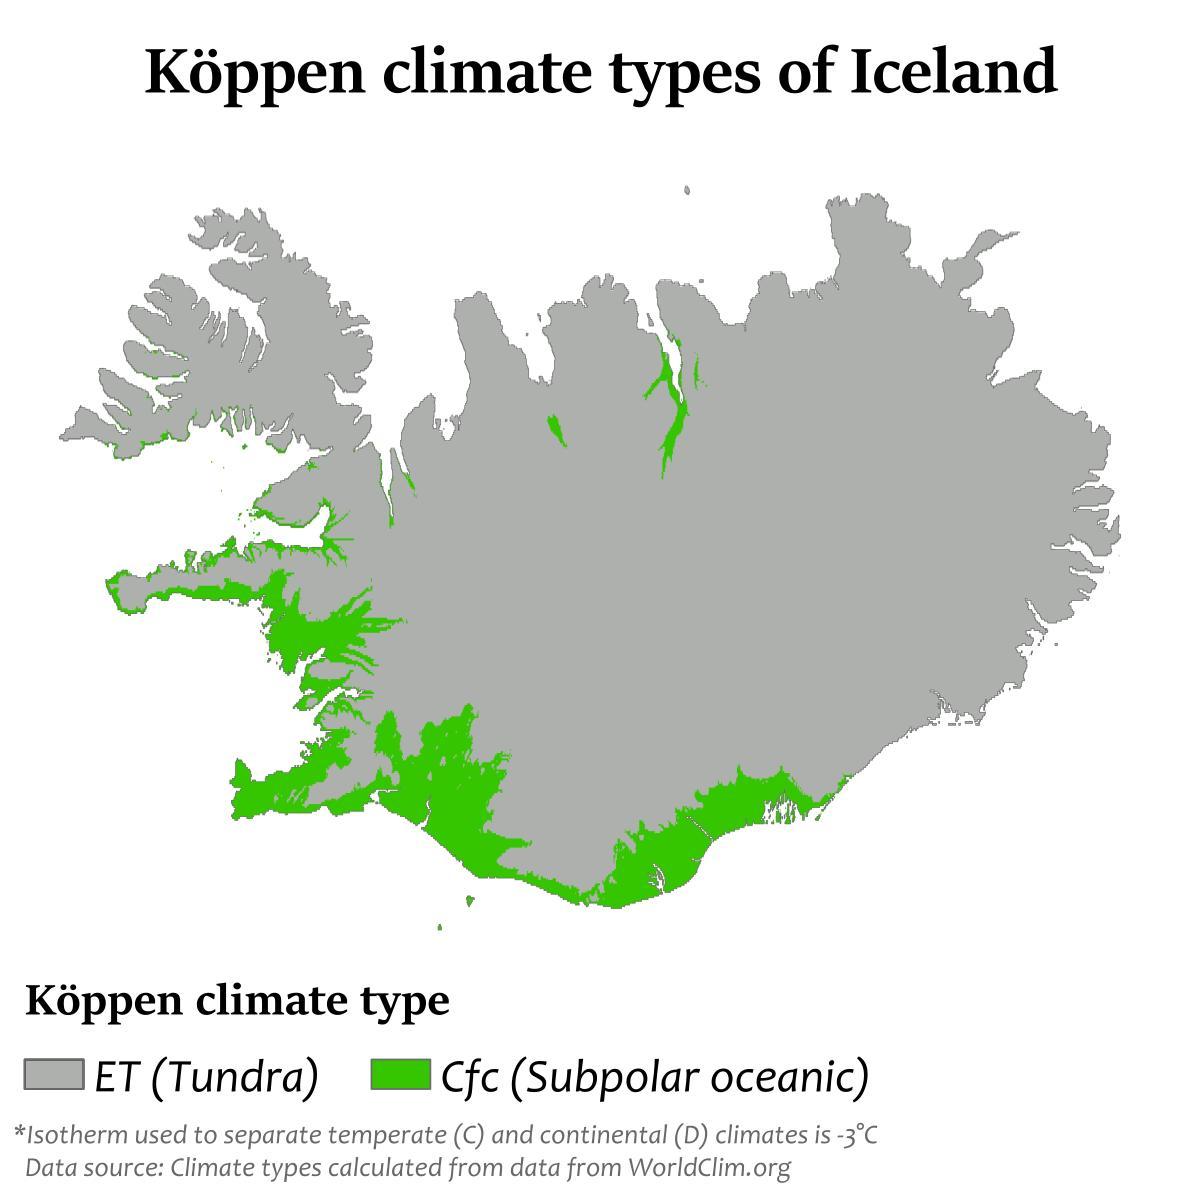 Mapa de temperatura de Islandia